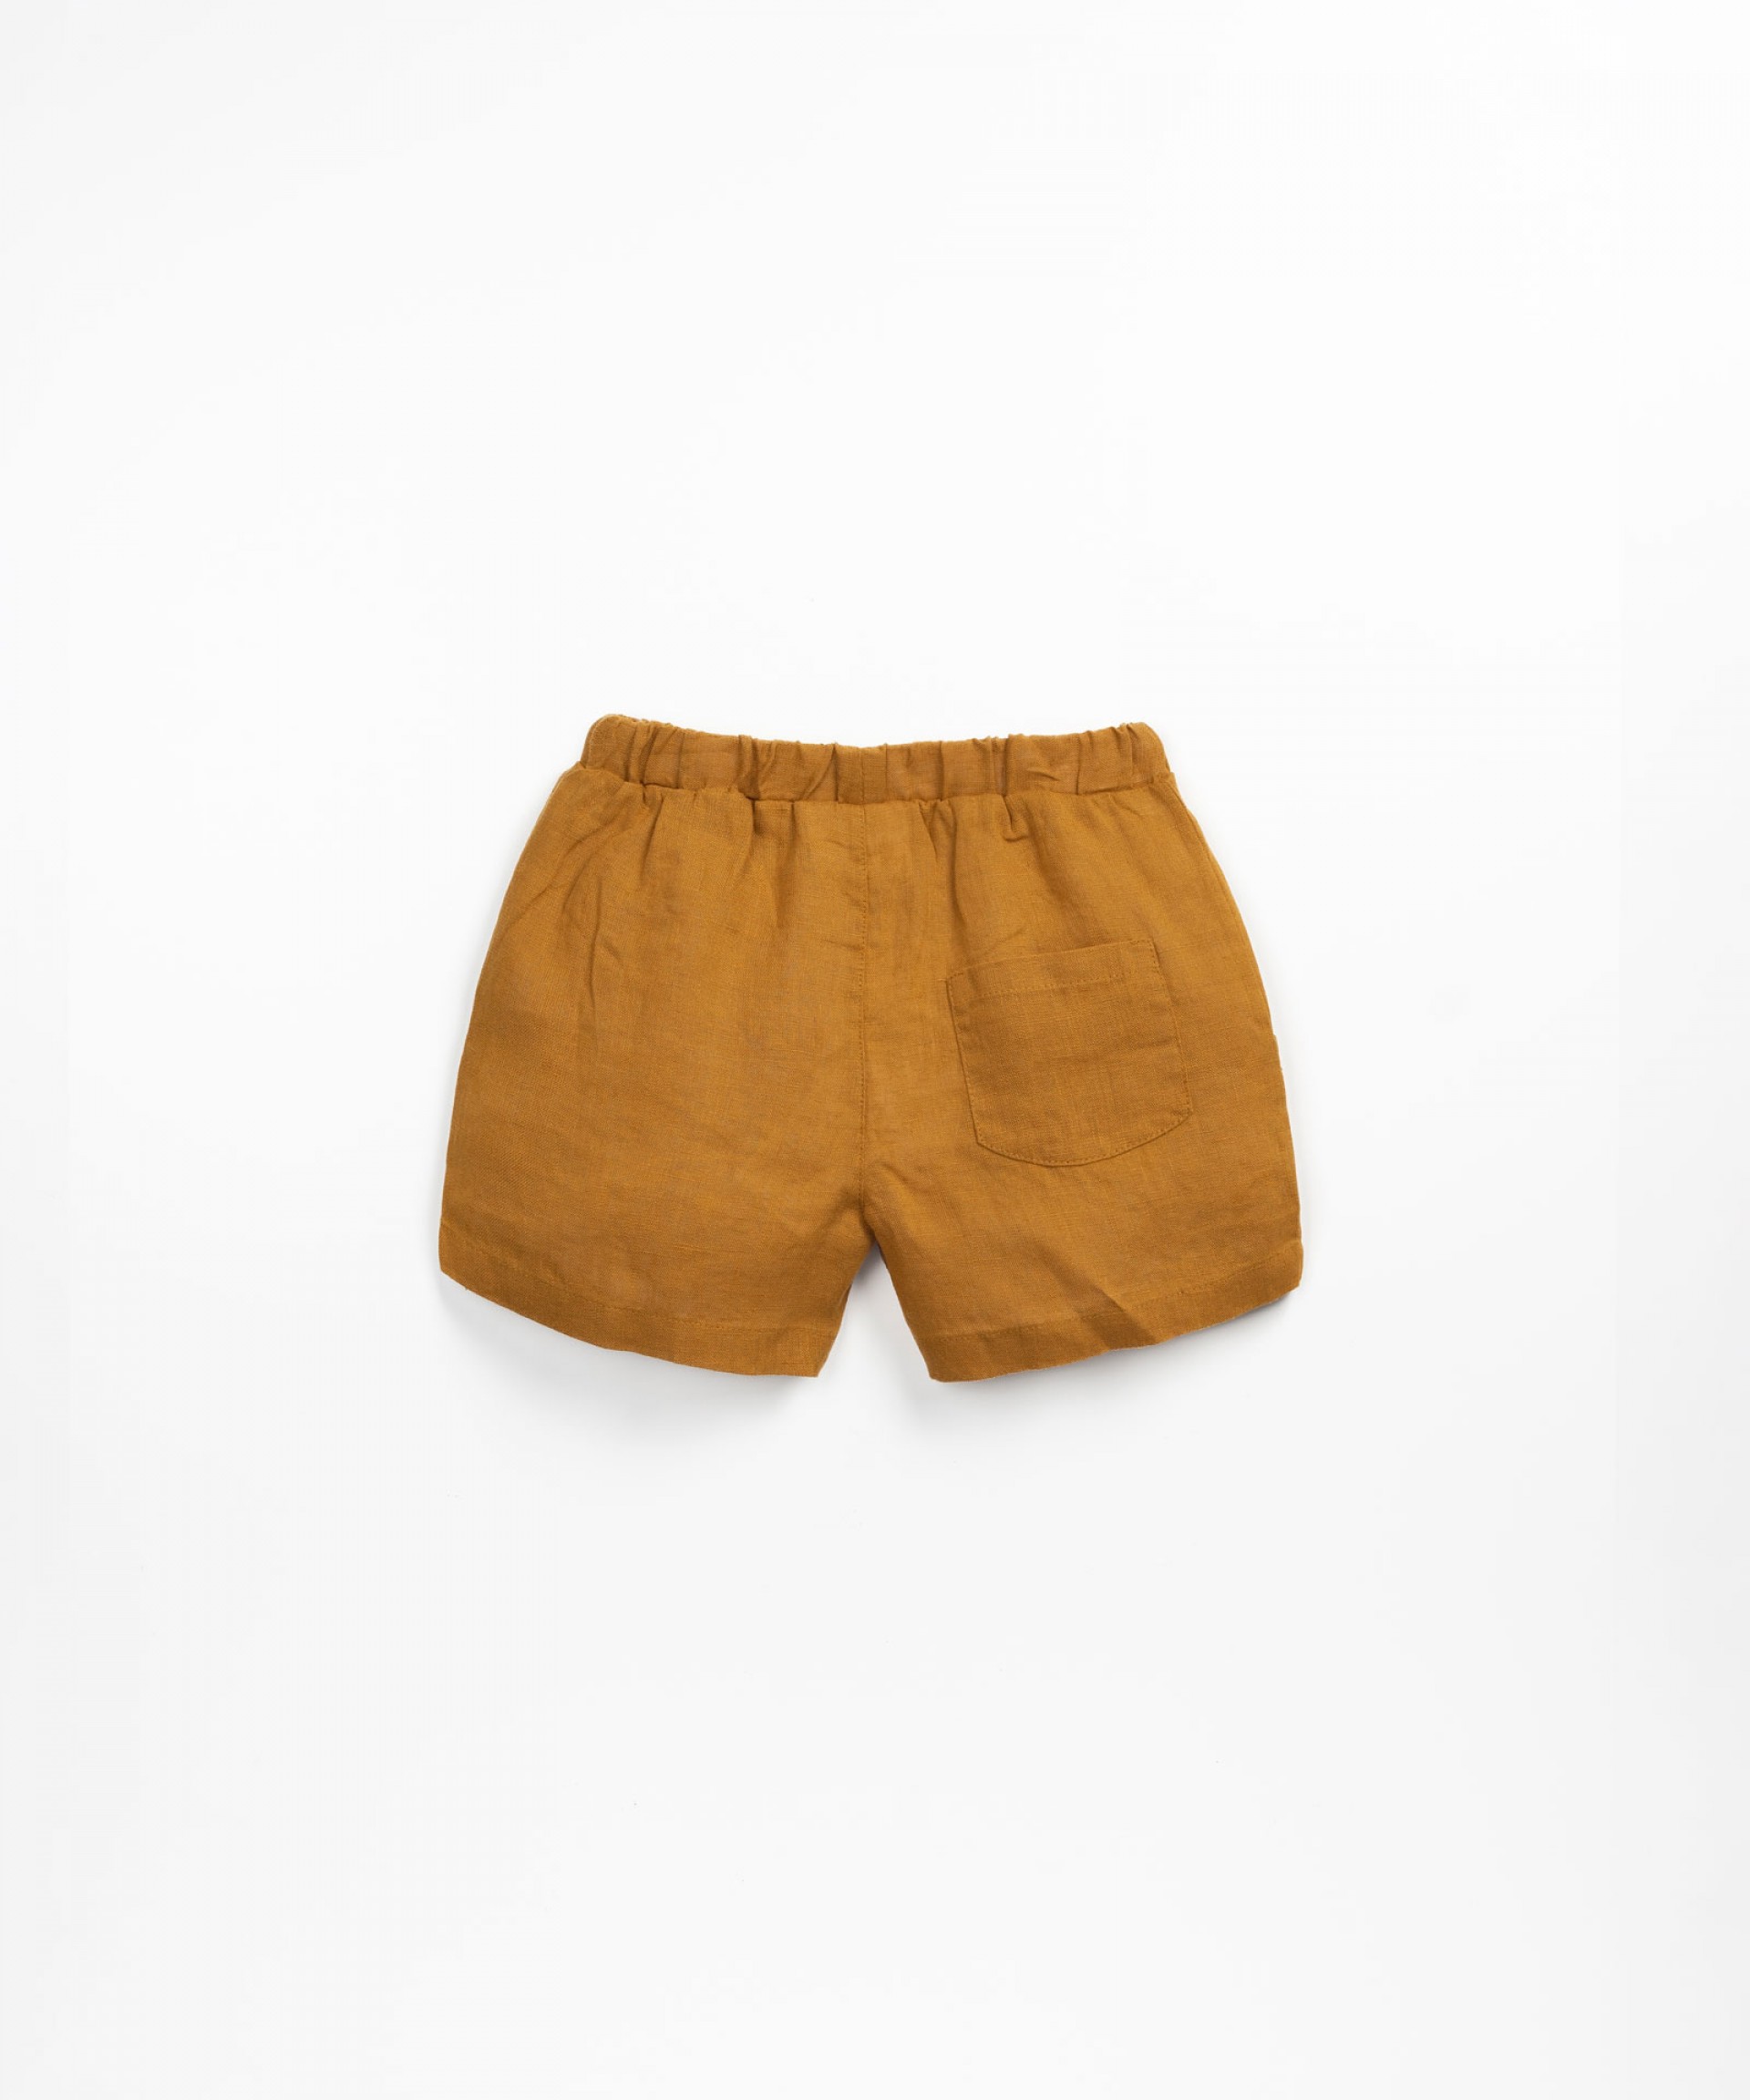 Linen shorts with false placket | Textile Art